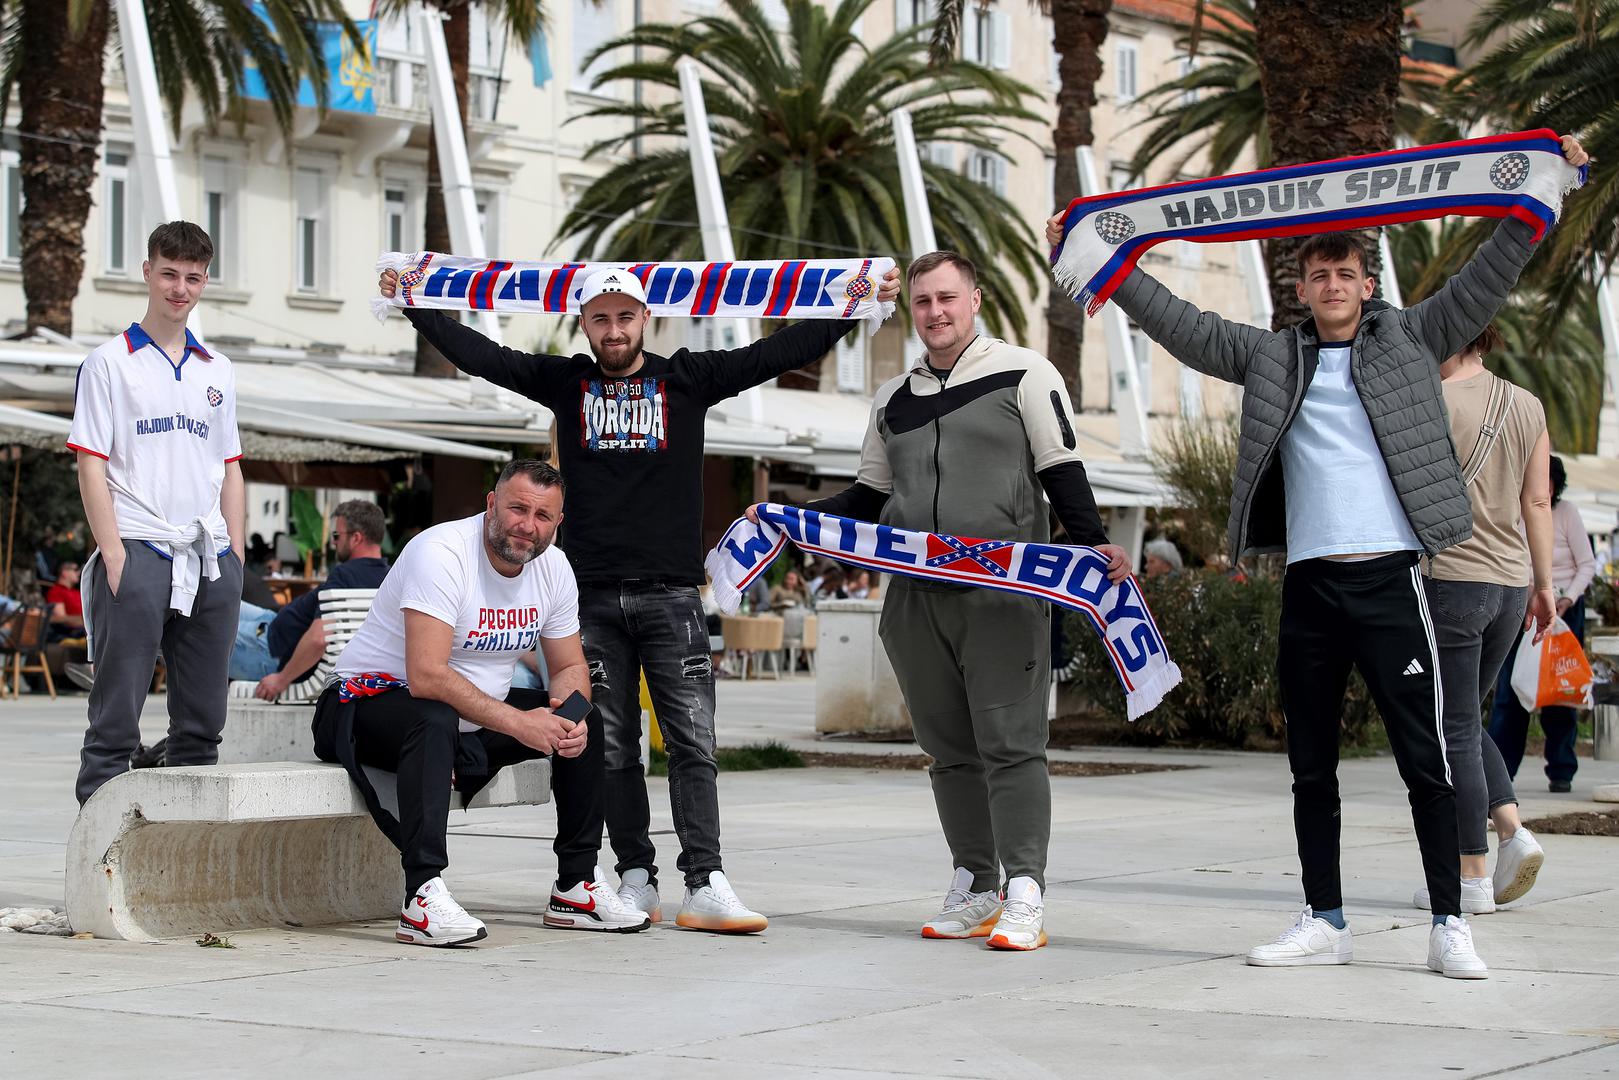 Navijači Hajduka priželjkuju pobjedu splitske momčadi nakon poraza u derbiju otprije četiri dana u HNL-u